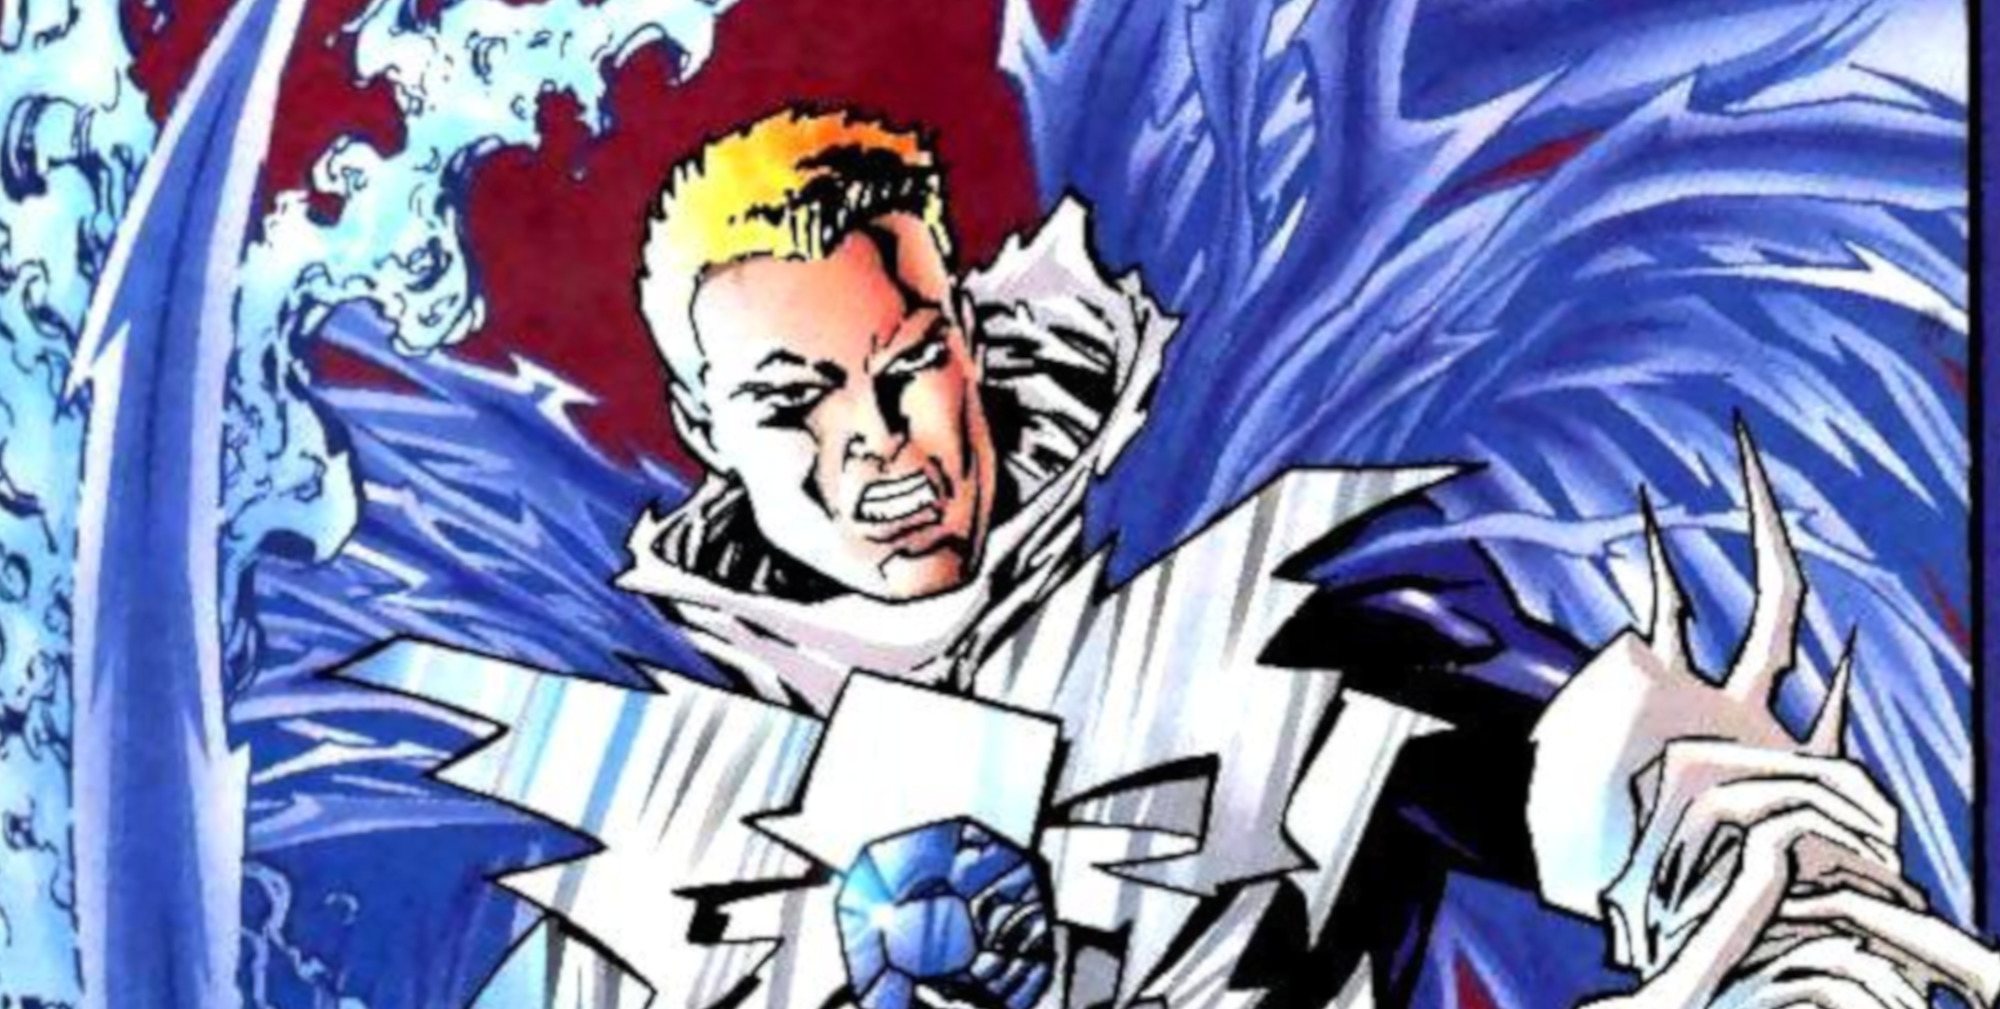 El villano Cobalt Blue, que todavía no ha aparecido en la serie, tal cual se ve en los cómics